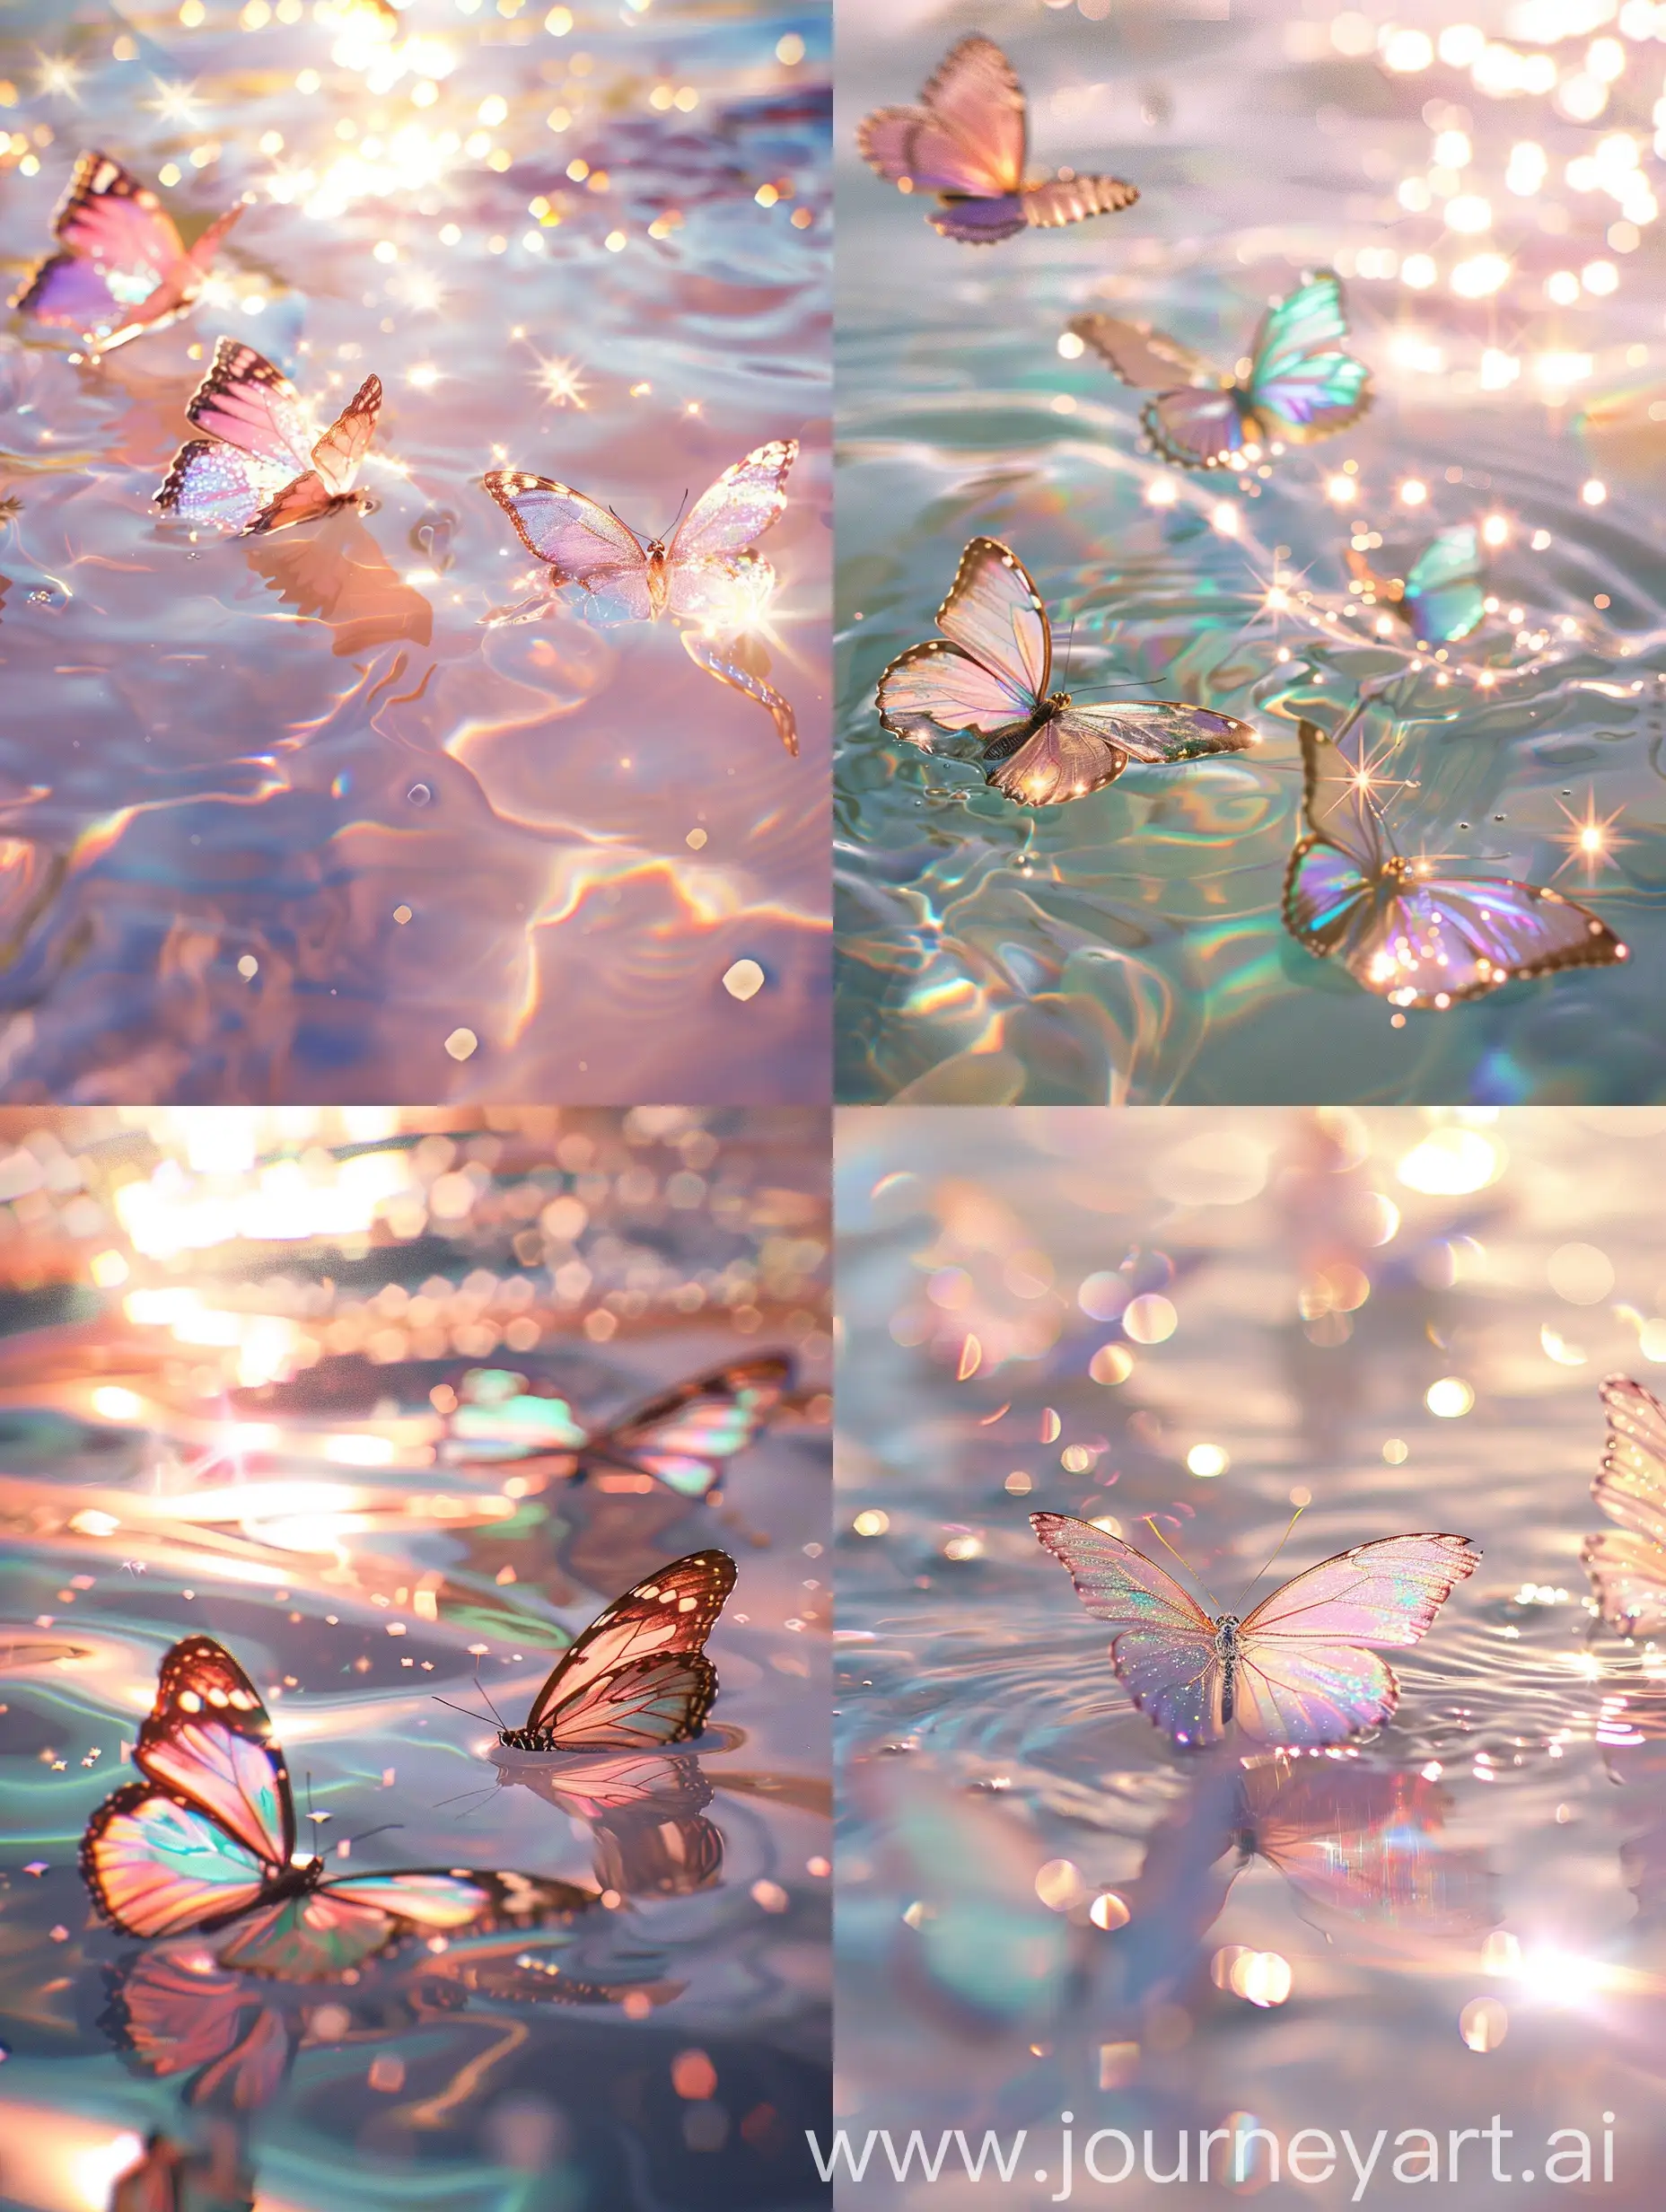 流水，浅粉色，cinetic photo of some Butterflies on the surface of the water，sparkles,iridescent colors,stylize750，阳光照在水面，光泽感